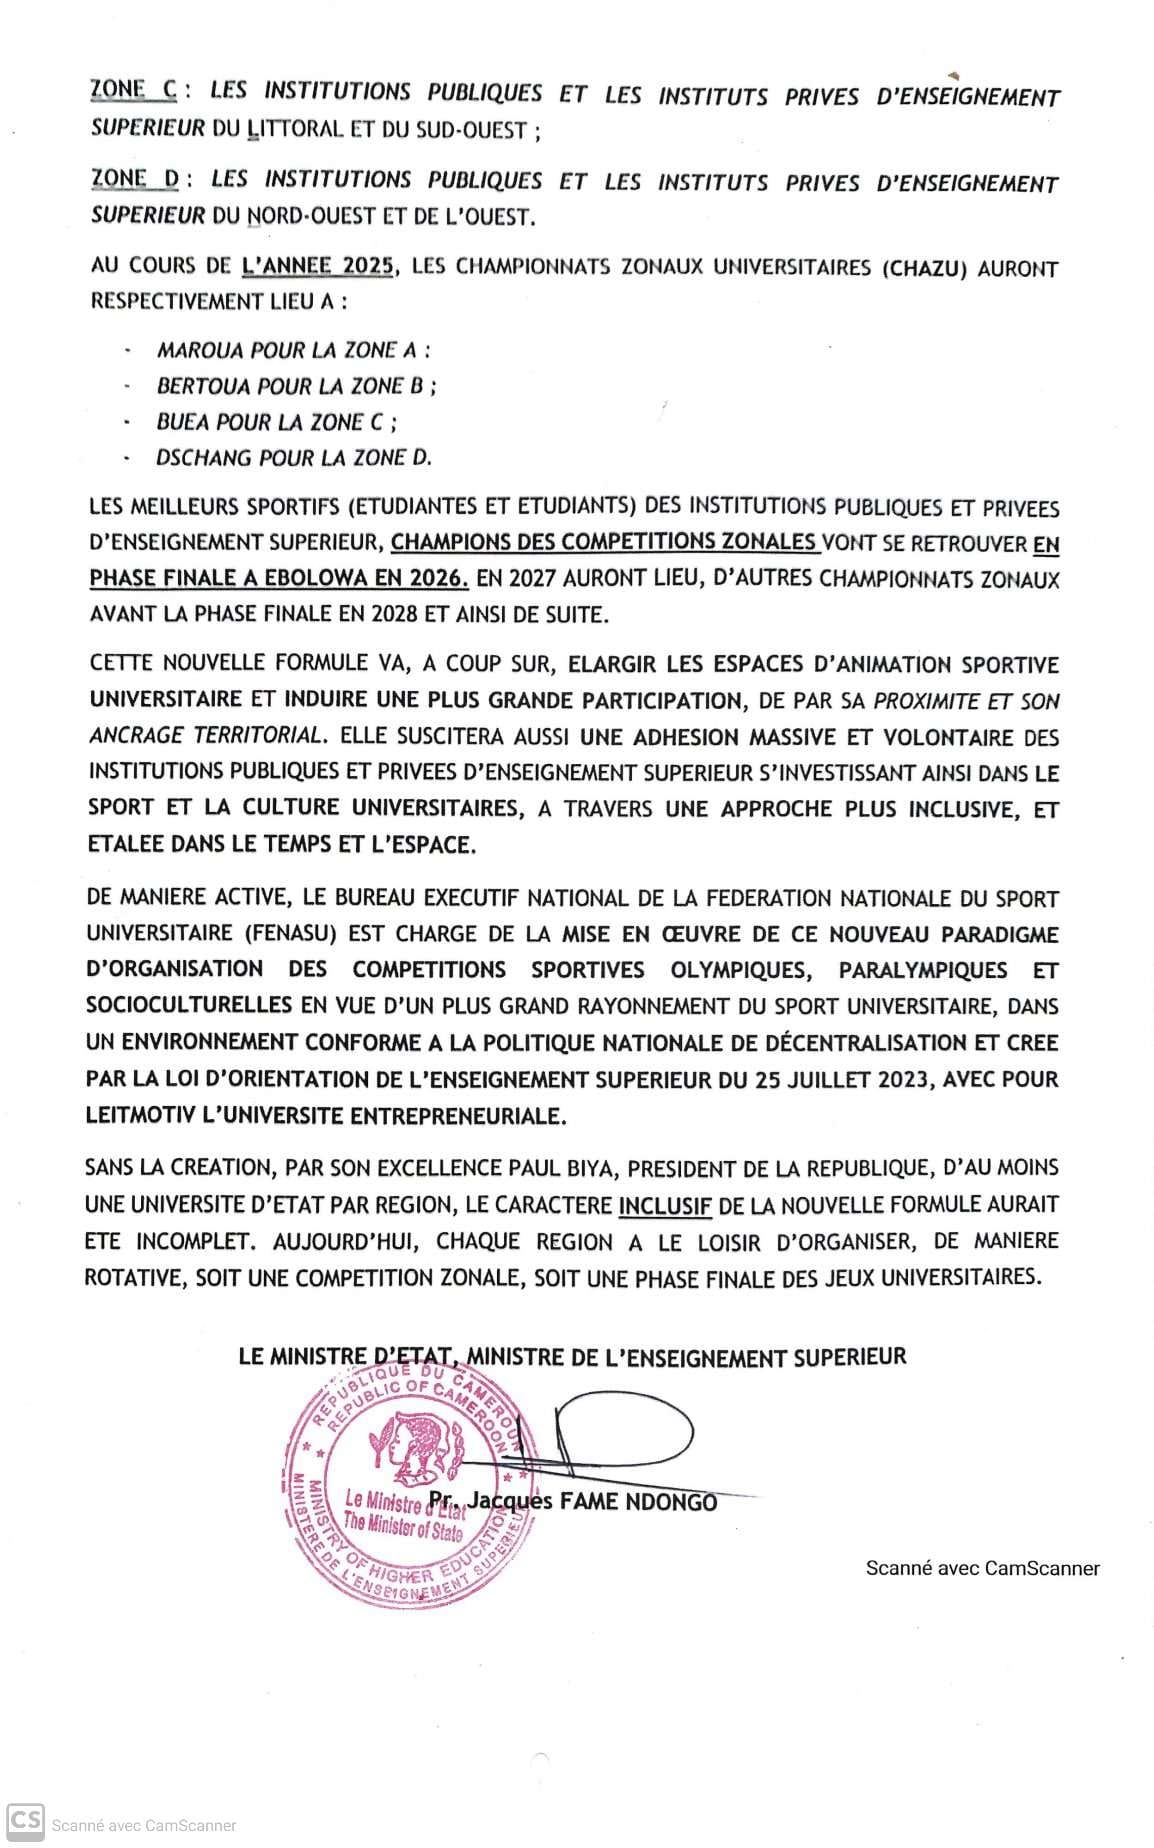 Le Ministère de l'Enseignement Supérieur du Cameroun a annoncé la clôture de la 24ème édition des Jeux Universitaires 2024